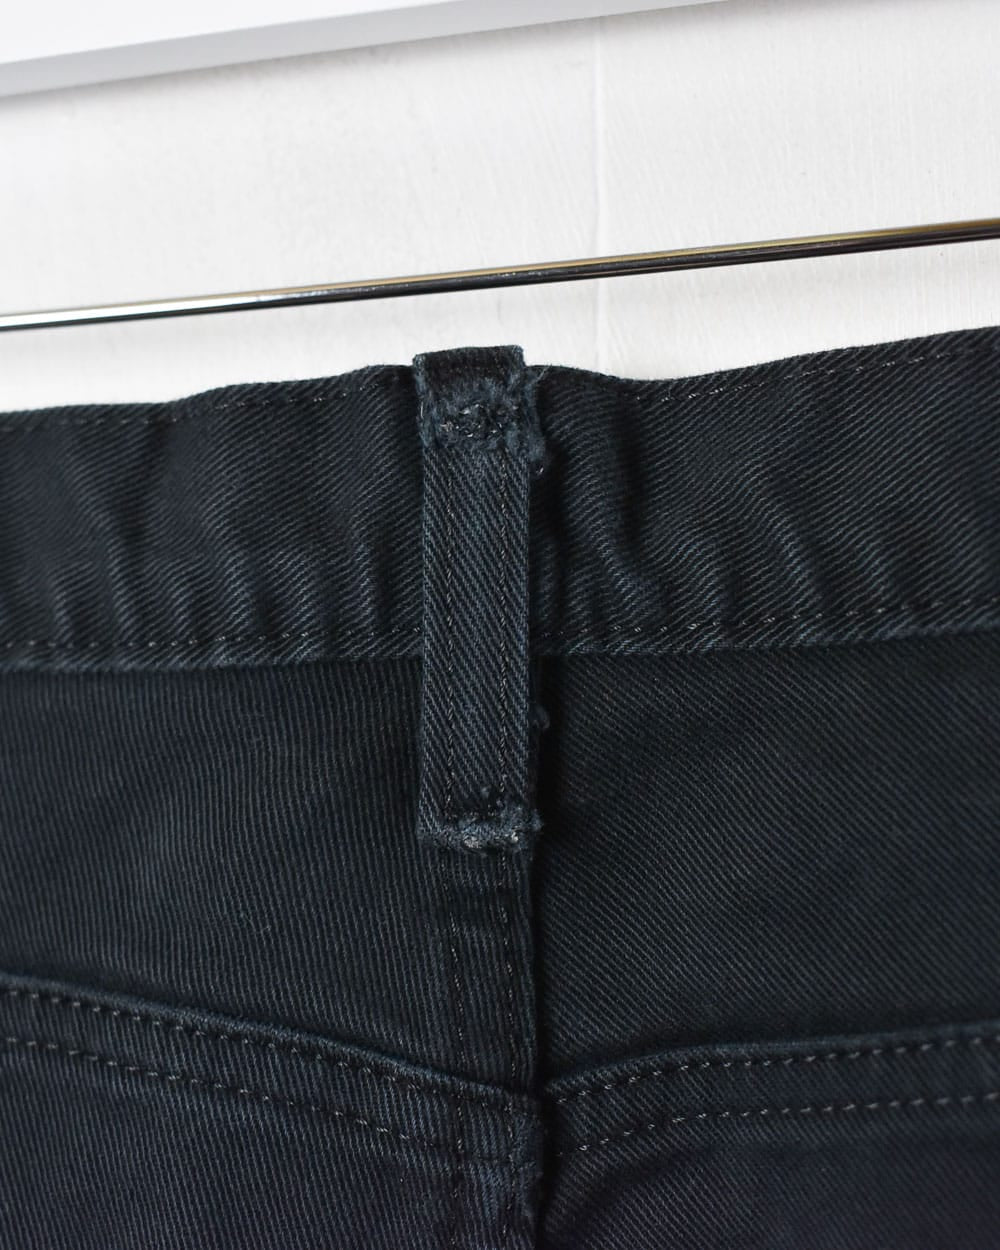 Black Dickies Jeans - W36 L33